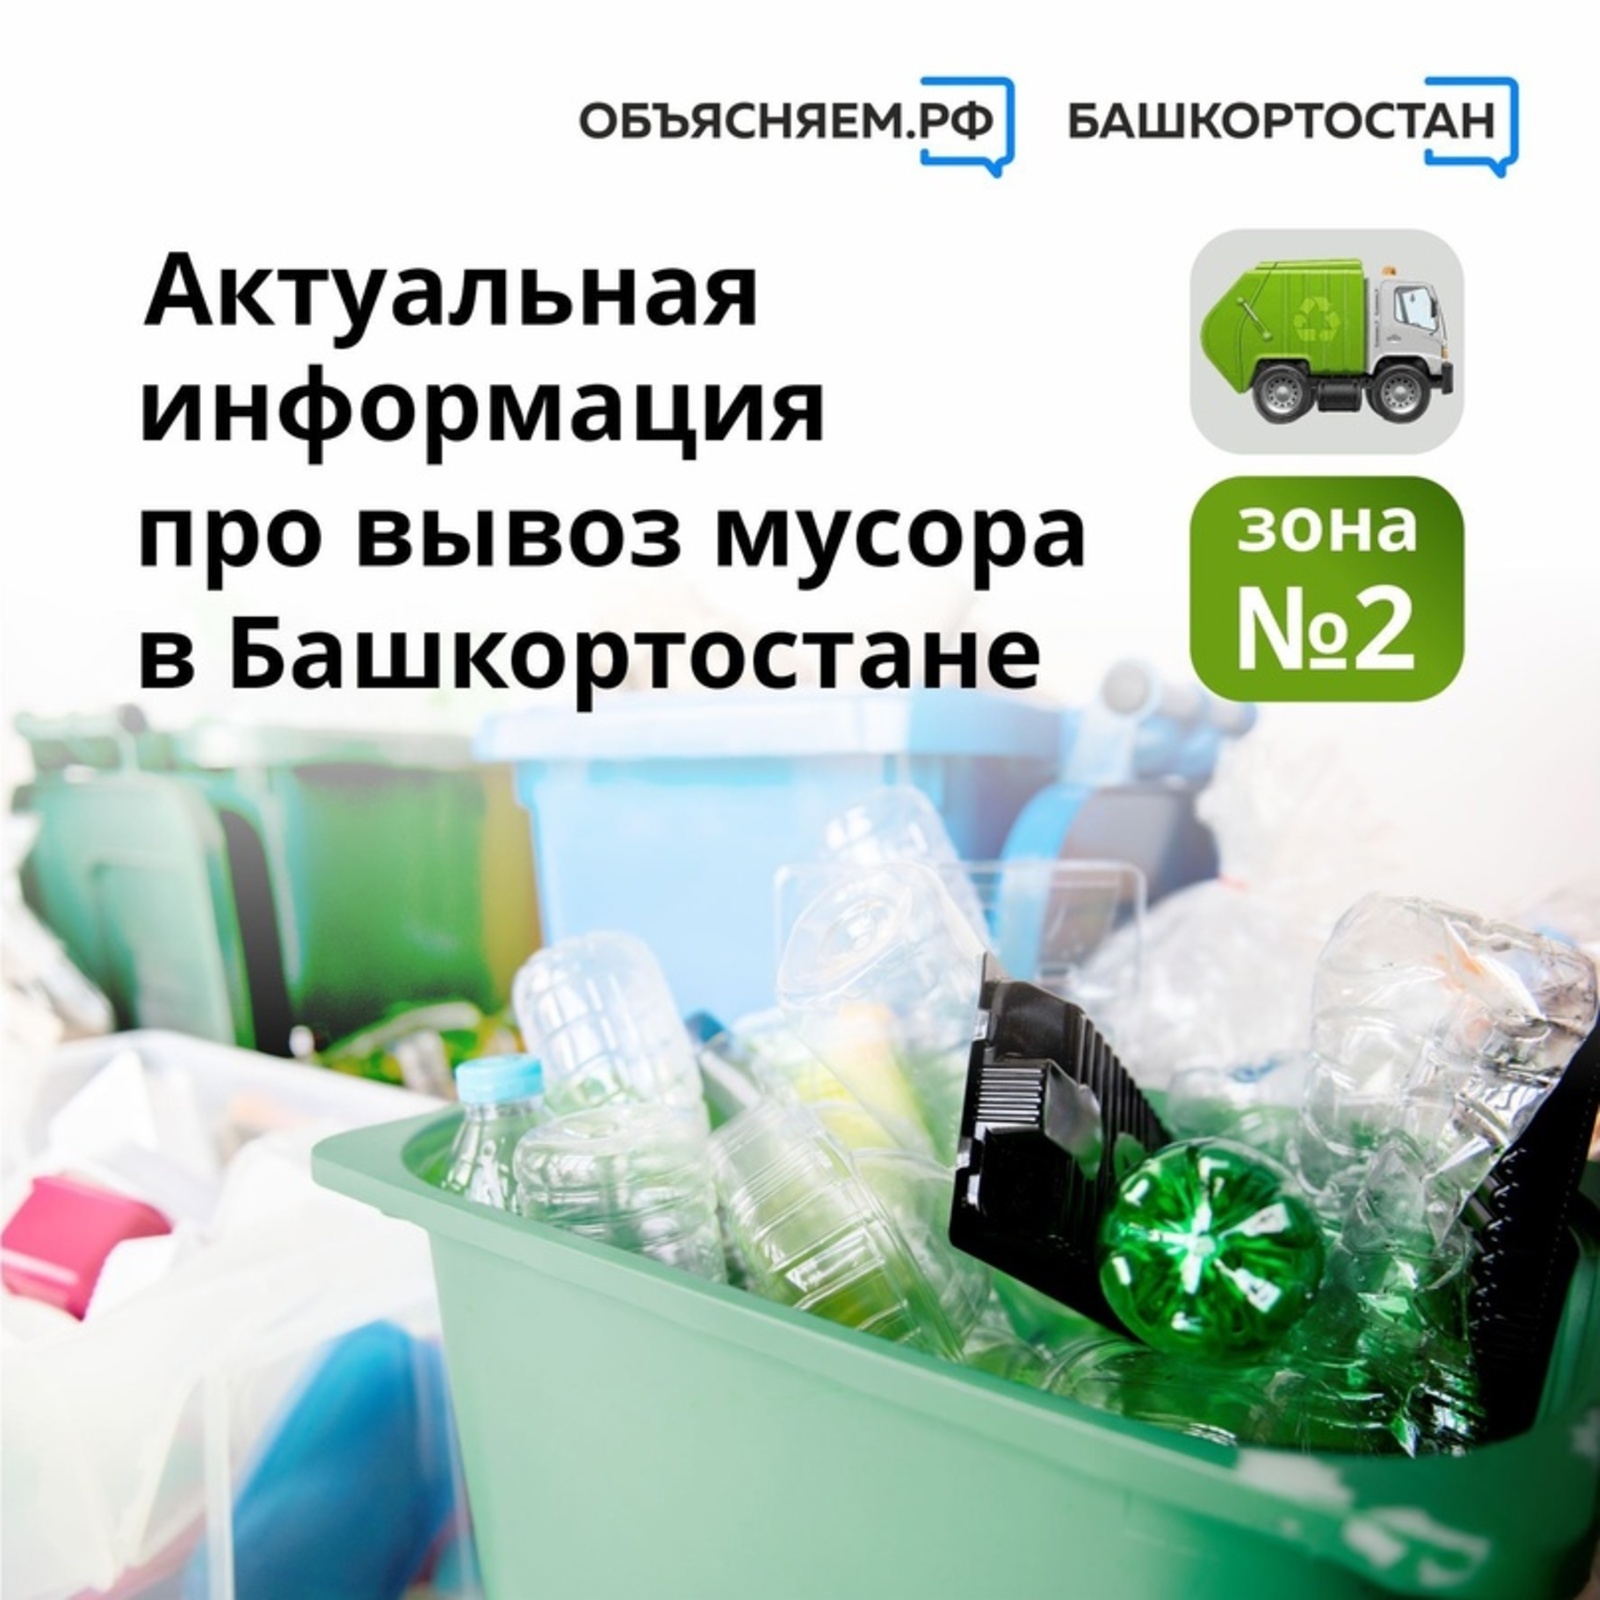 Актуальная информация про вывоз мусора в Башкортостане в зоне № 2